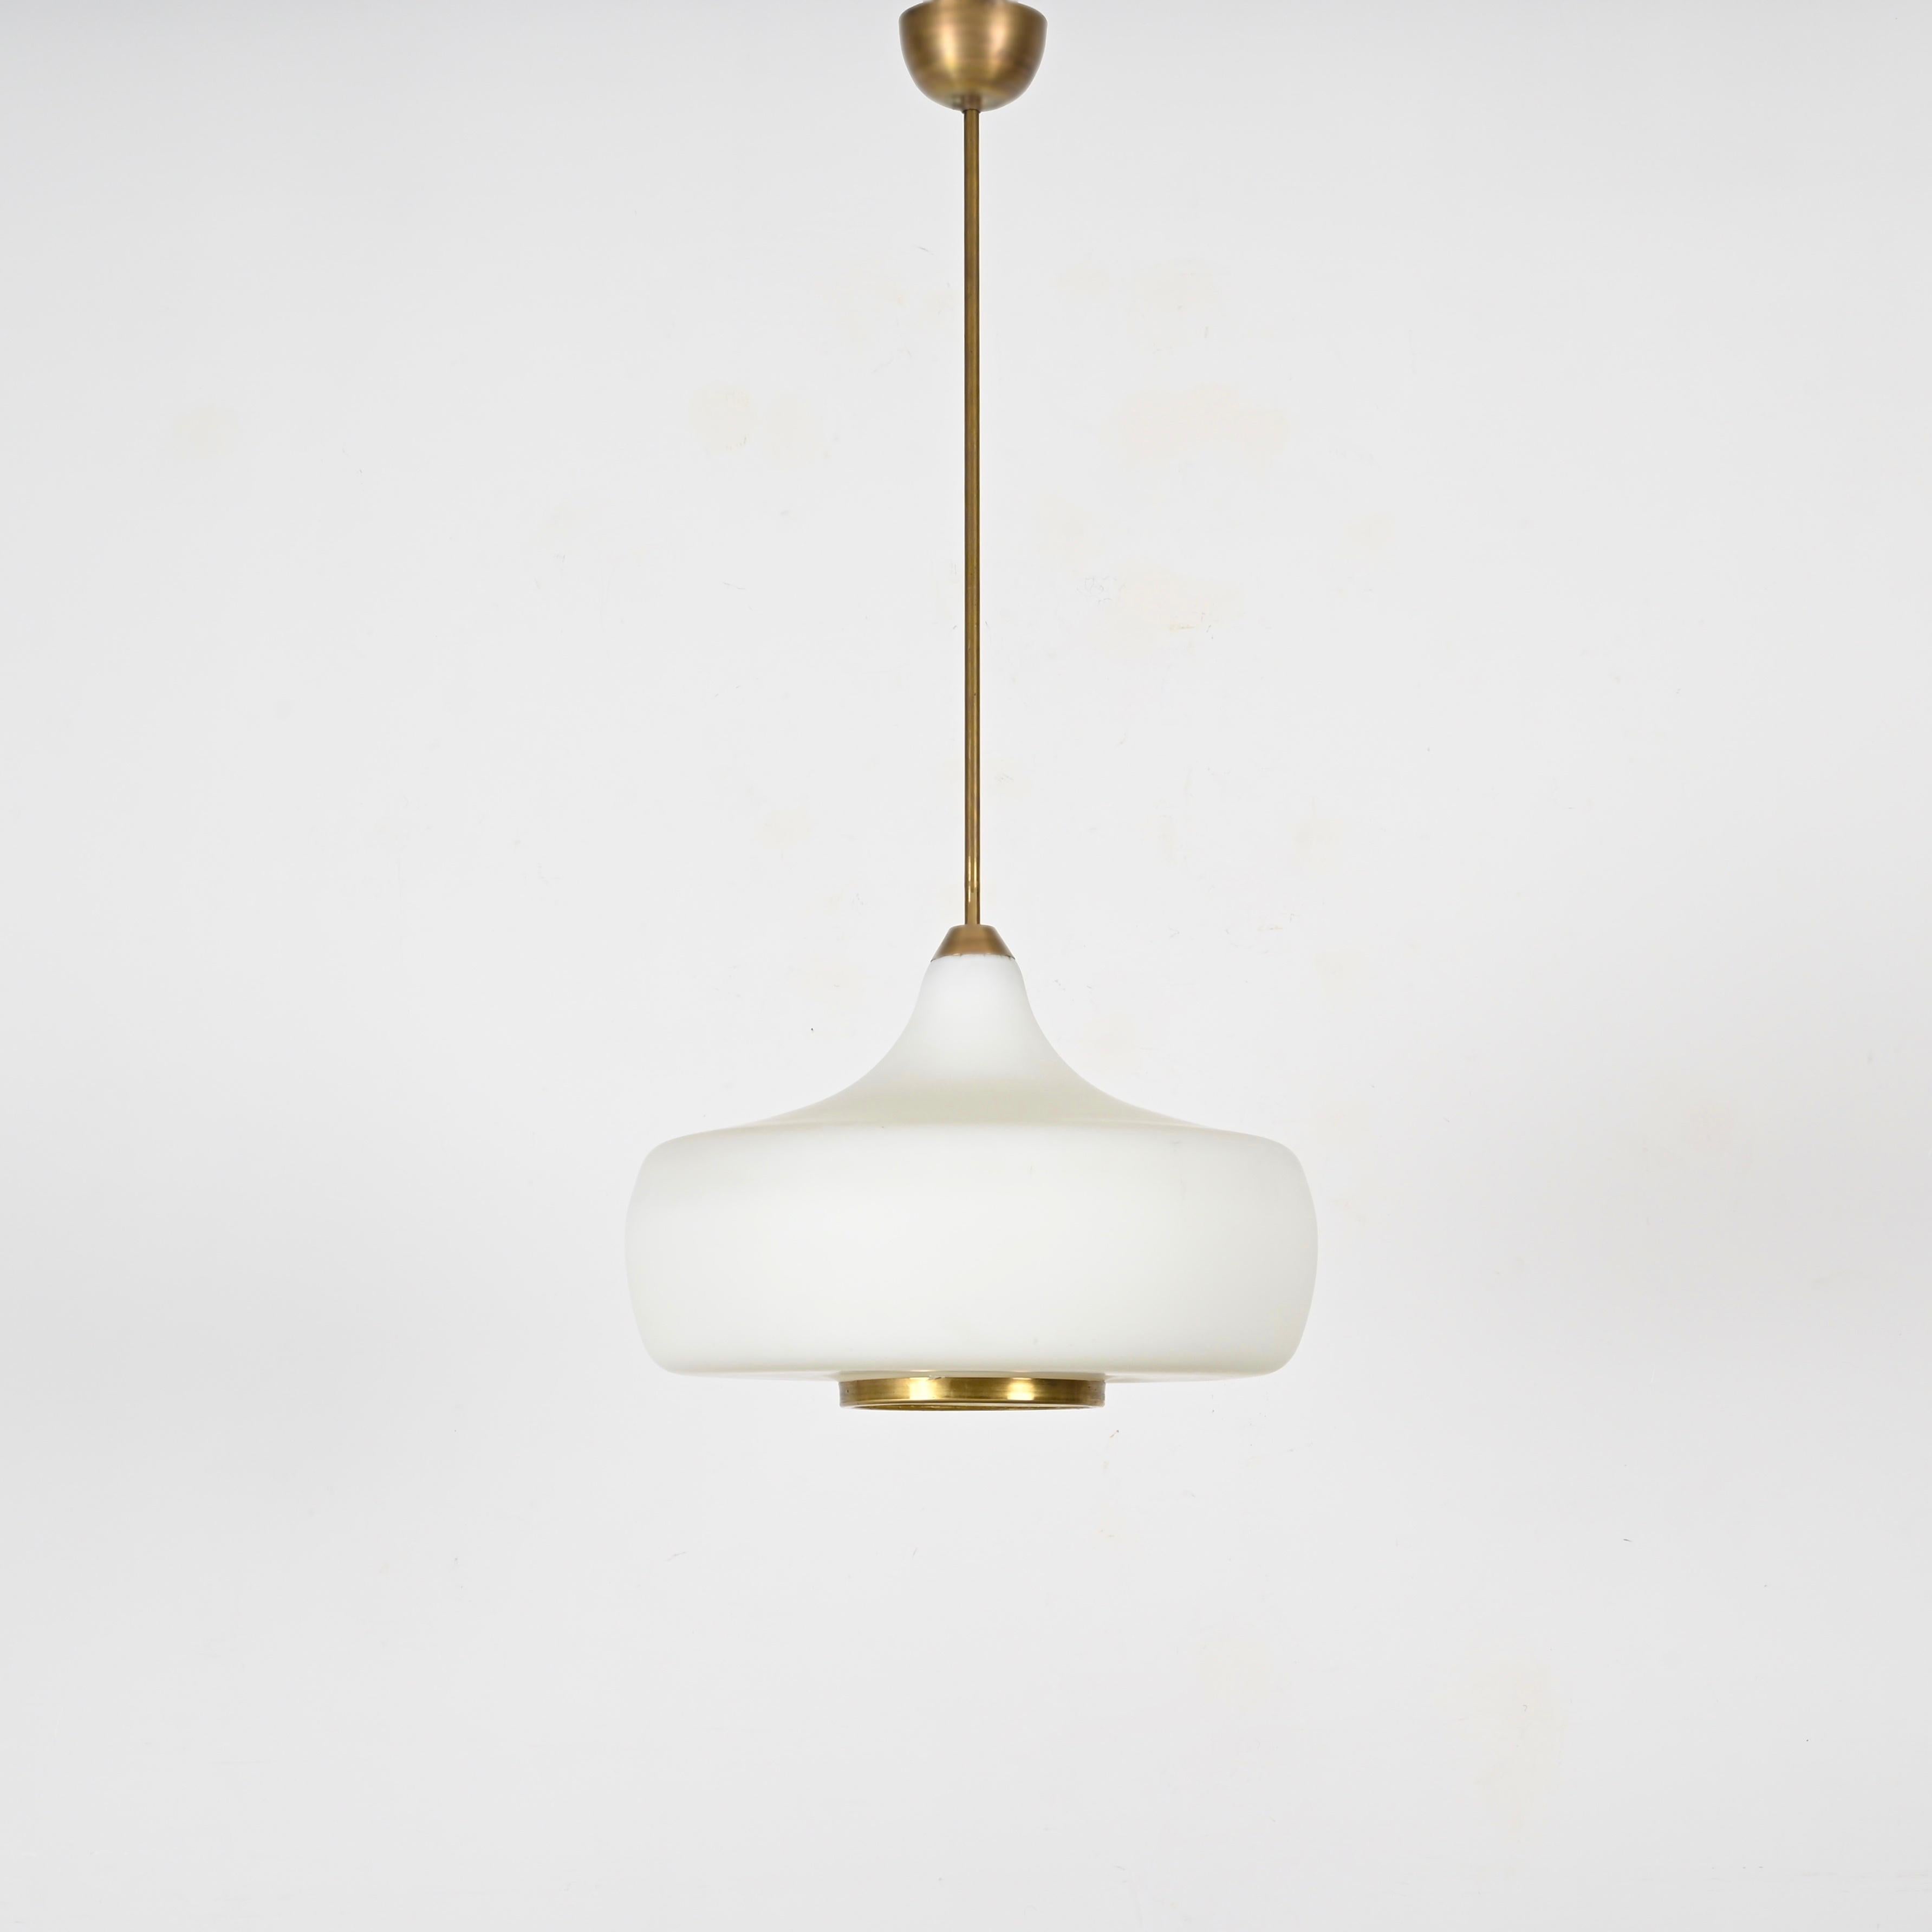 Stilnovo Opal Glass and Brass Chandelier Ceiling Lamp, Italian Lighting 1960s For Sale 2